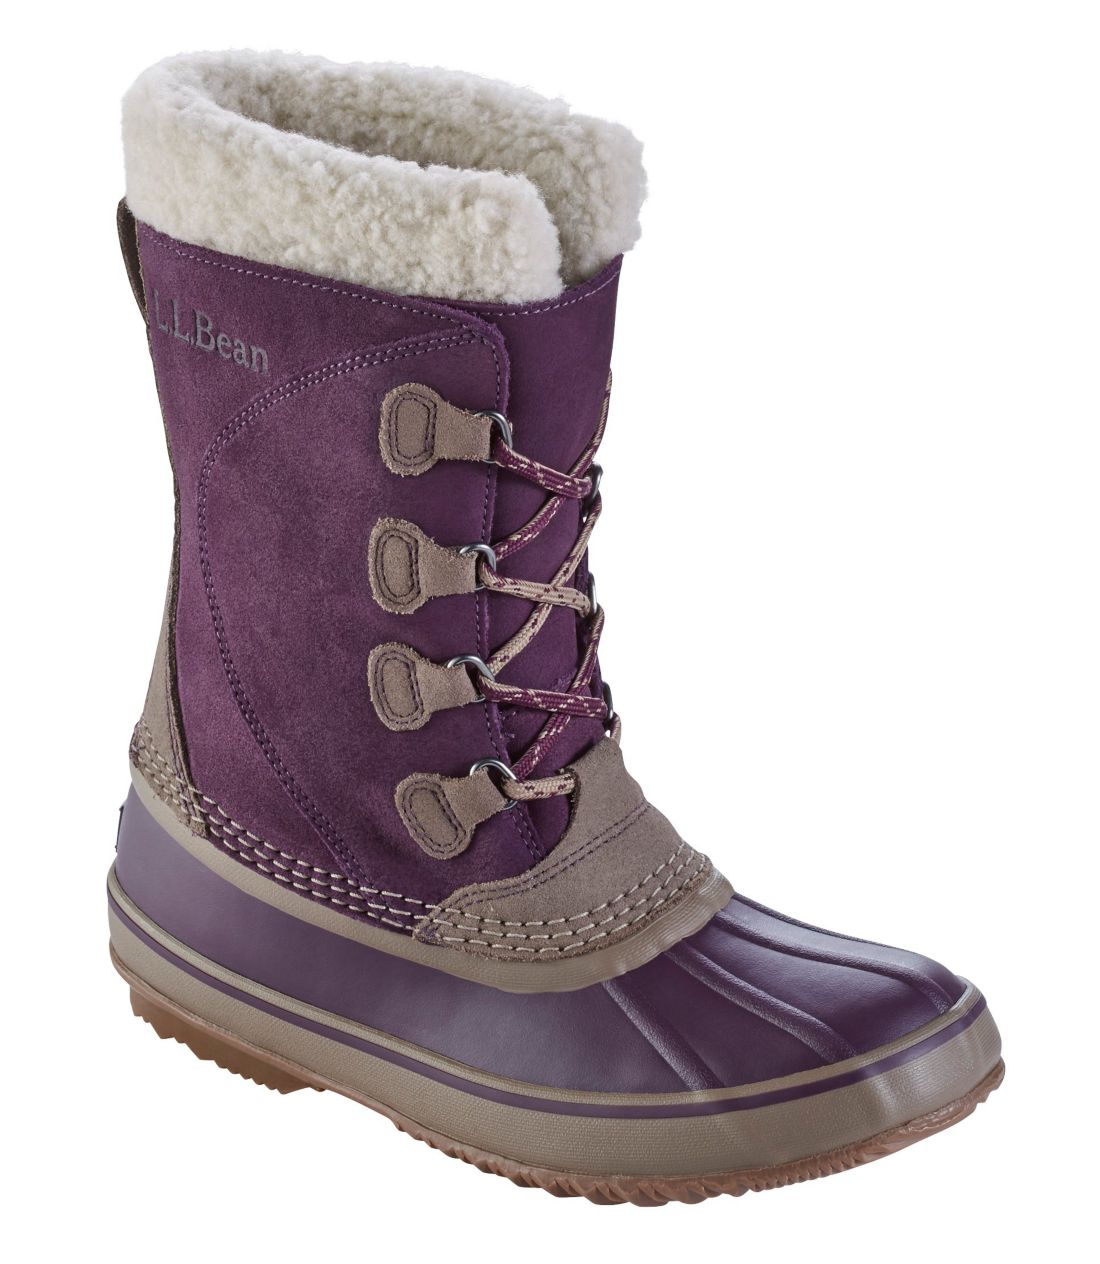 ll bean snow boots